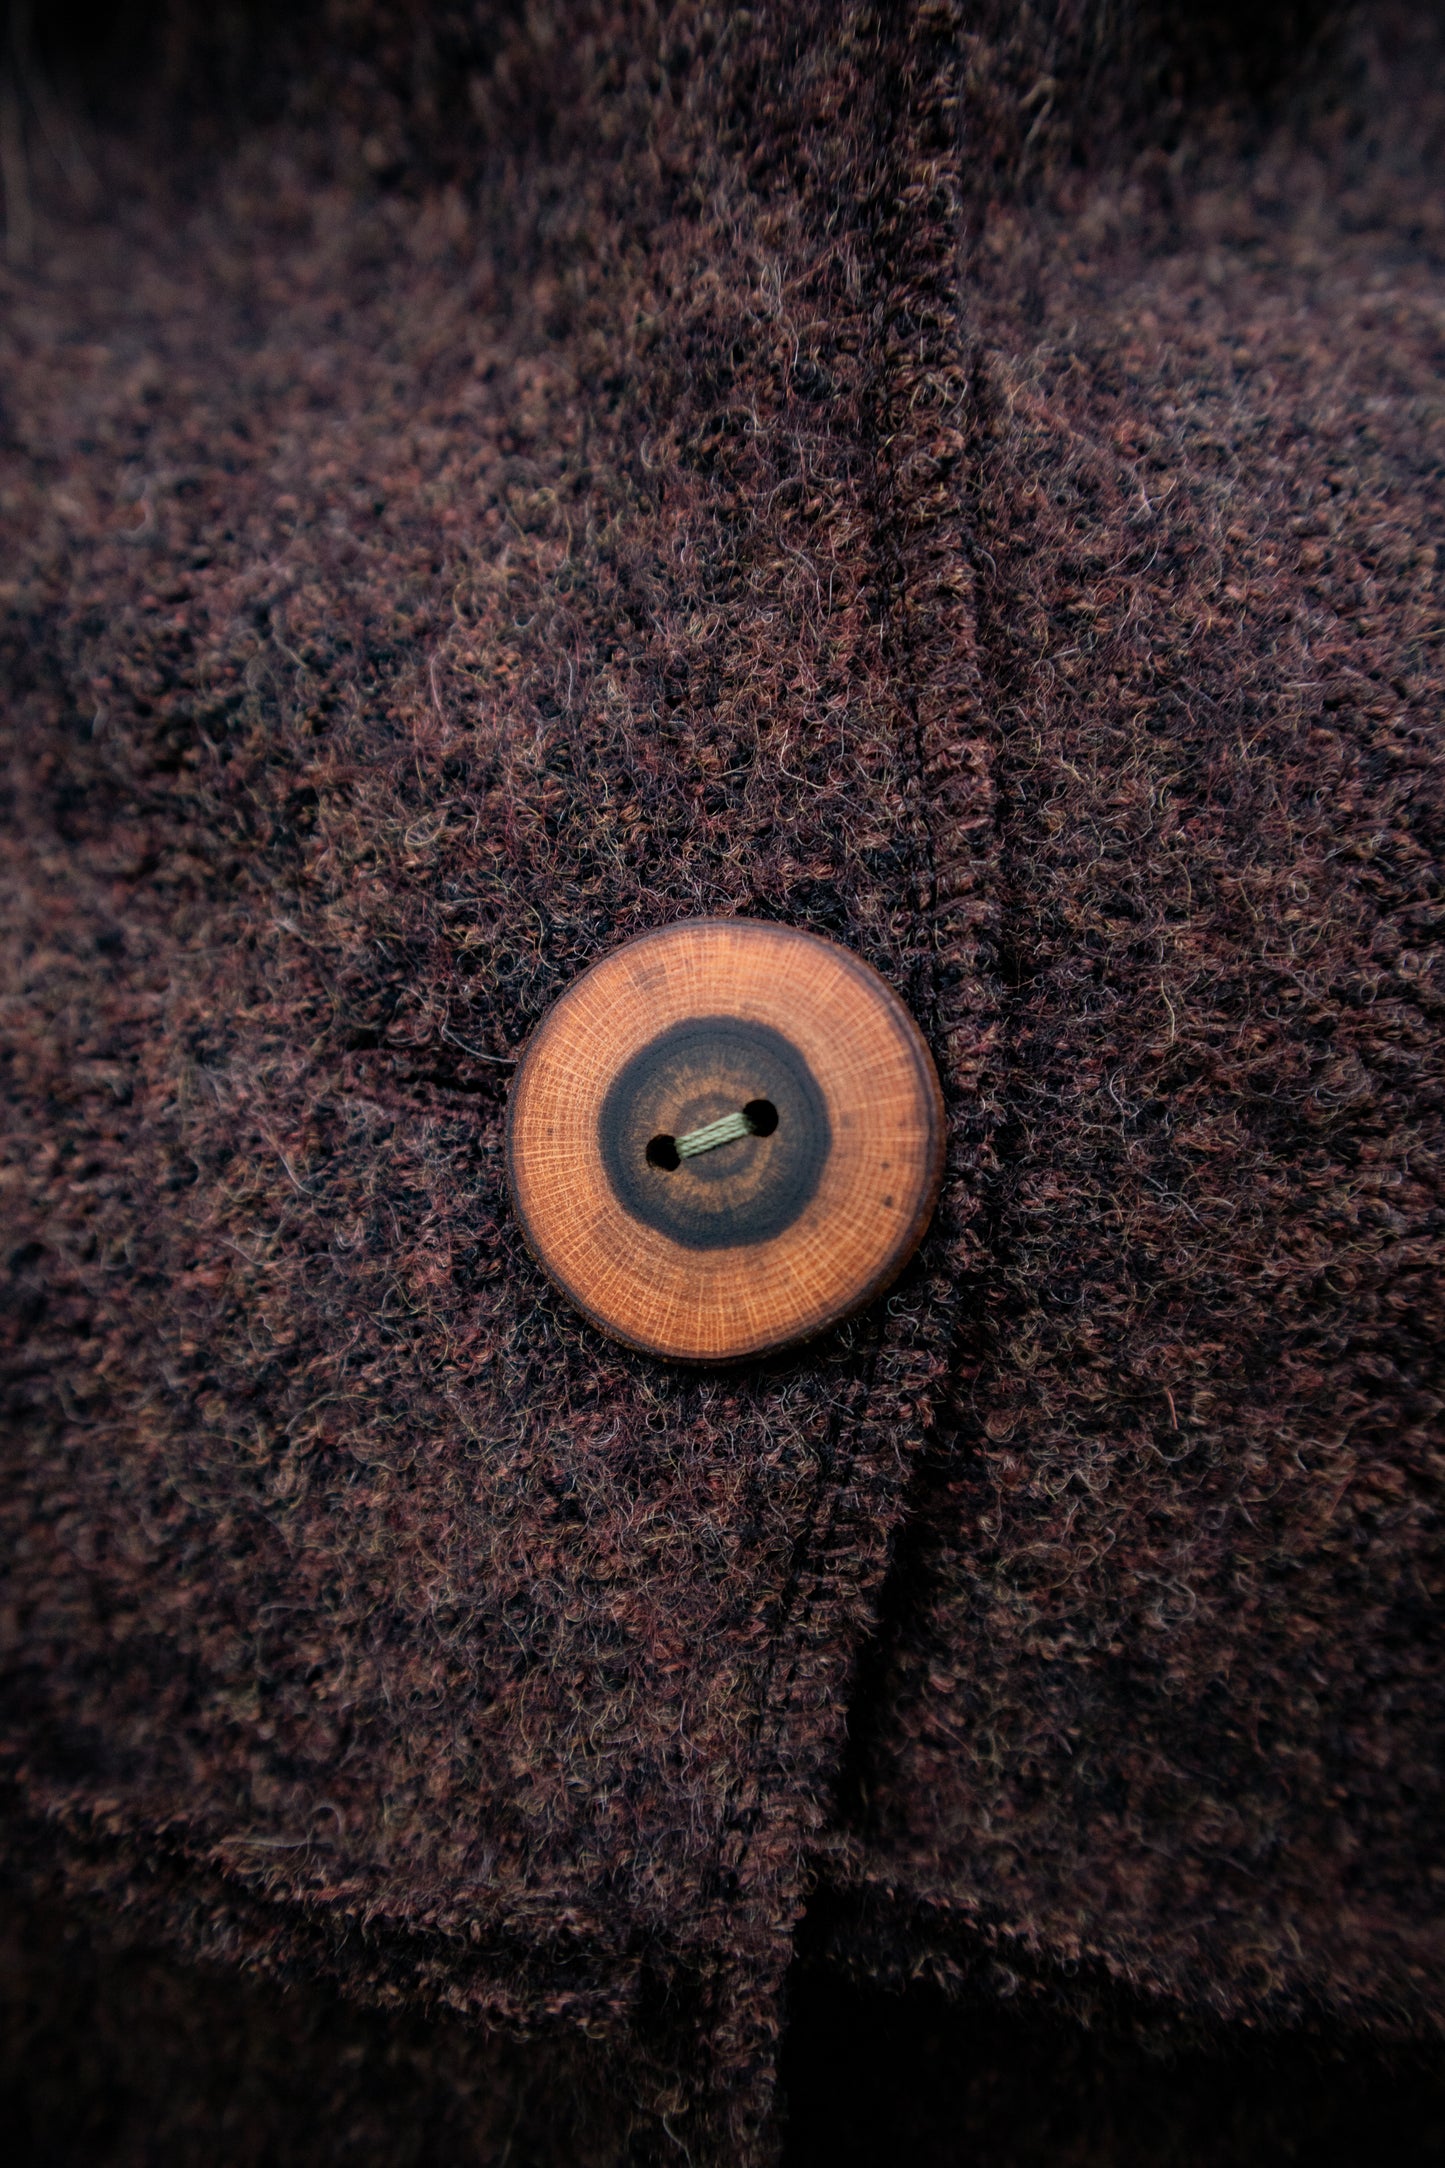 Size 42 - Short coat made of Merino wool